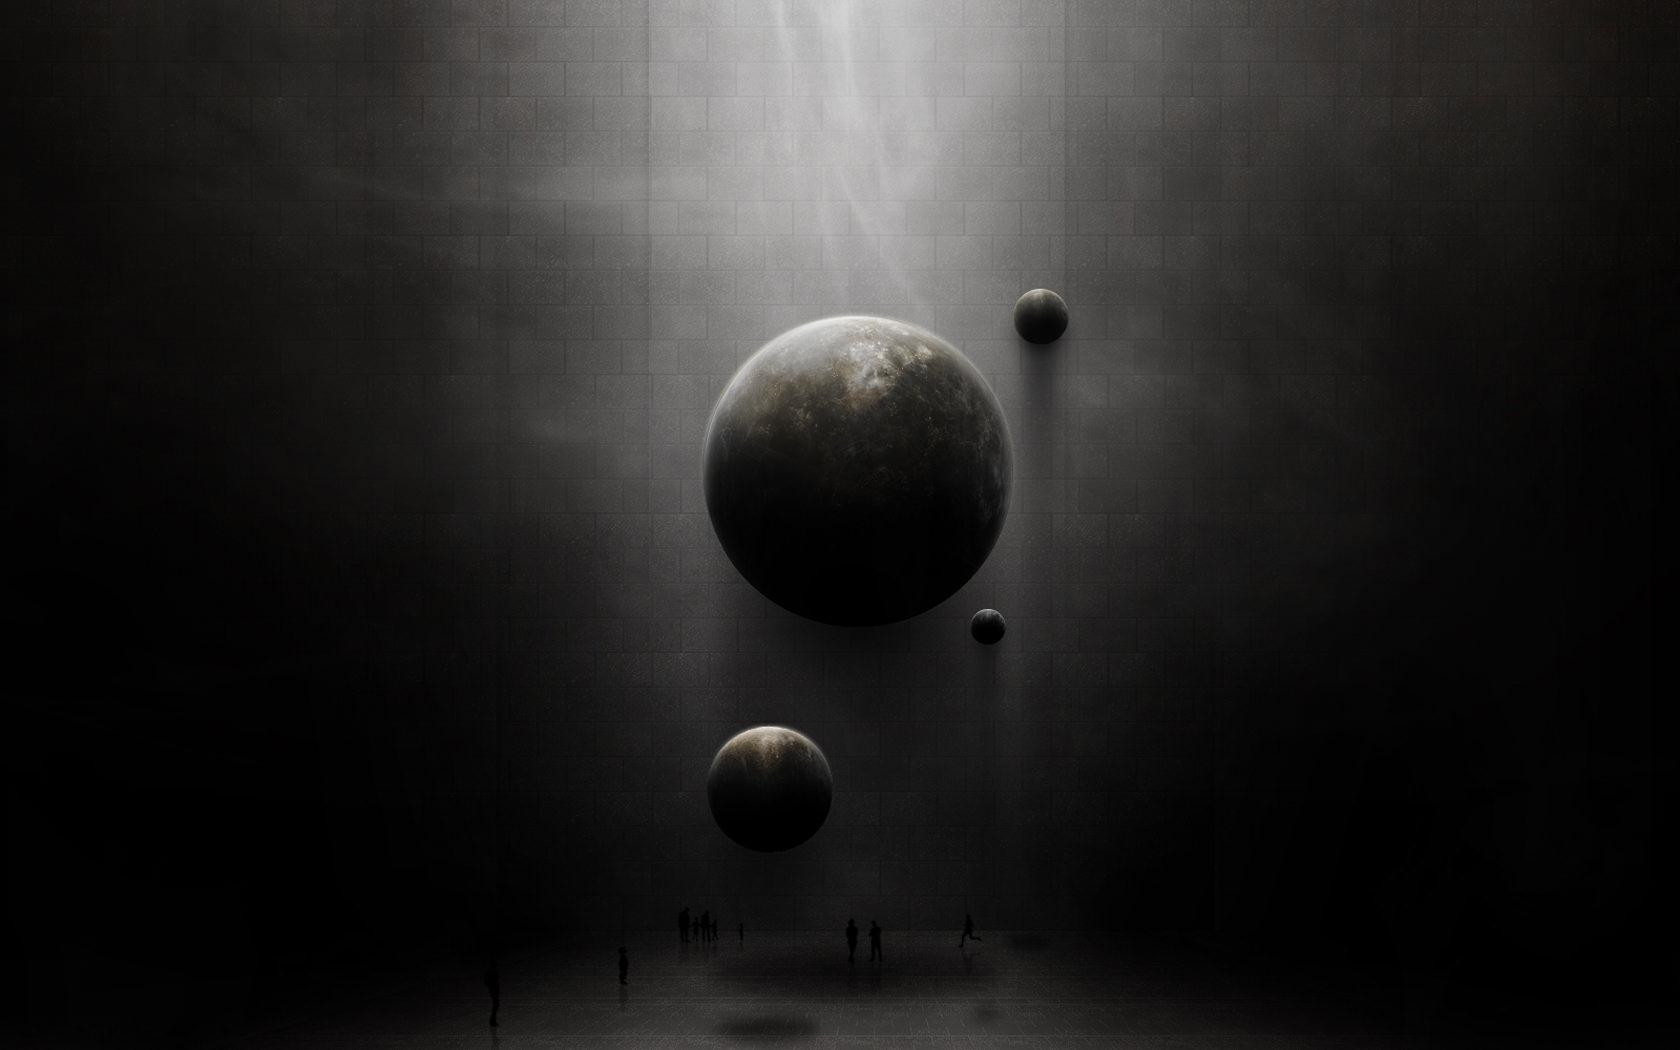 Abstract Dark Planets wallpaper from Dark wallpaper